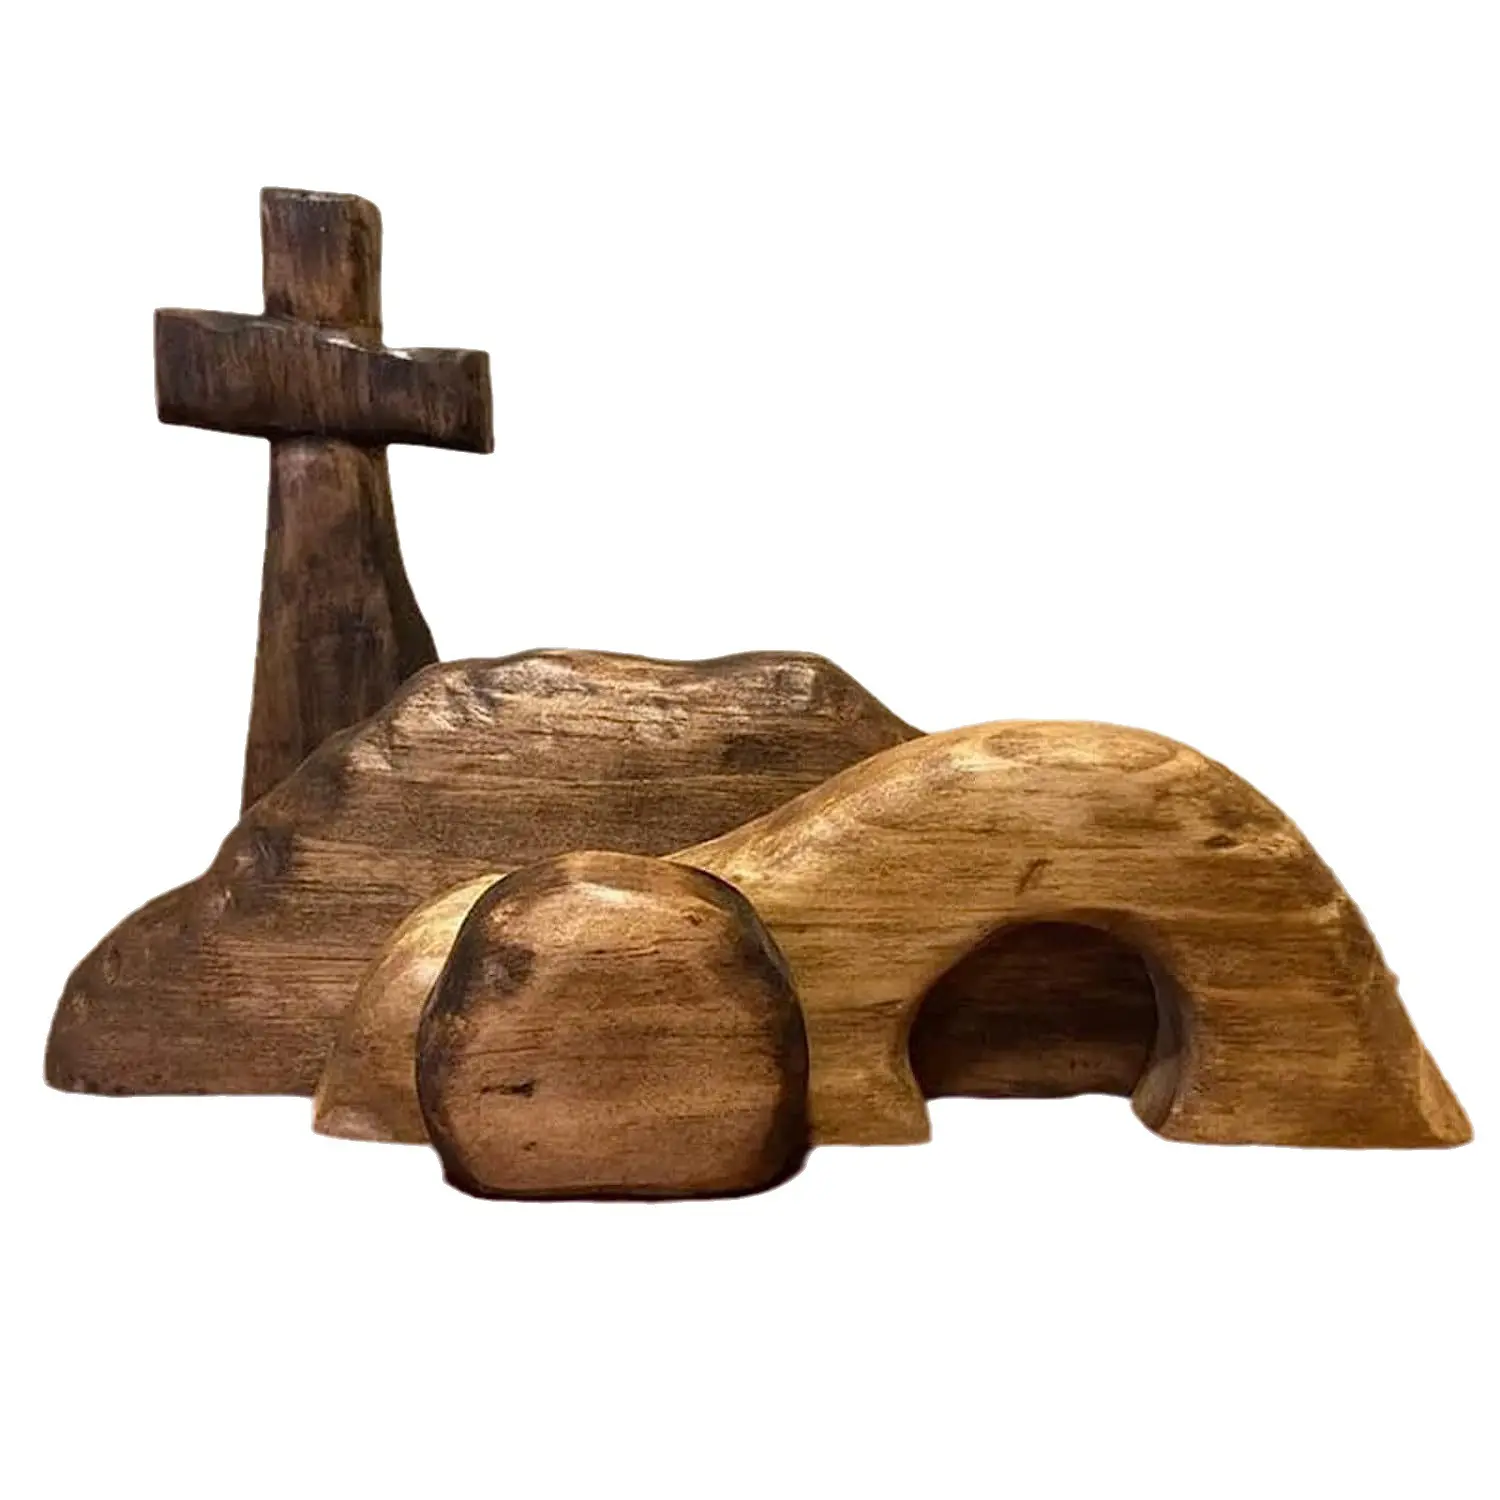 الصليب الخشبي والقبر الخالي مشهد عيد الفصح حرف خشبية جميلة لتزيين الحائط للمنزل أو الكنيسة